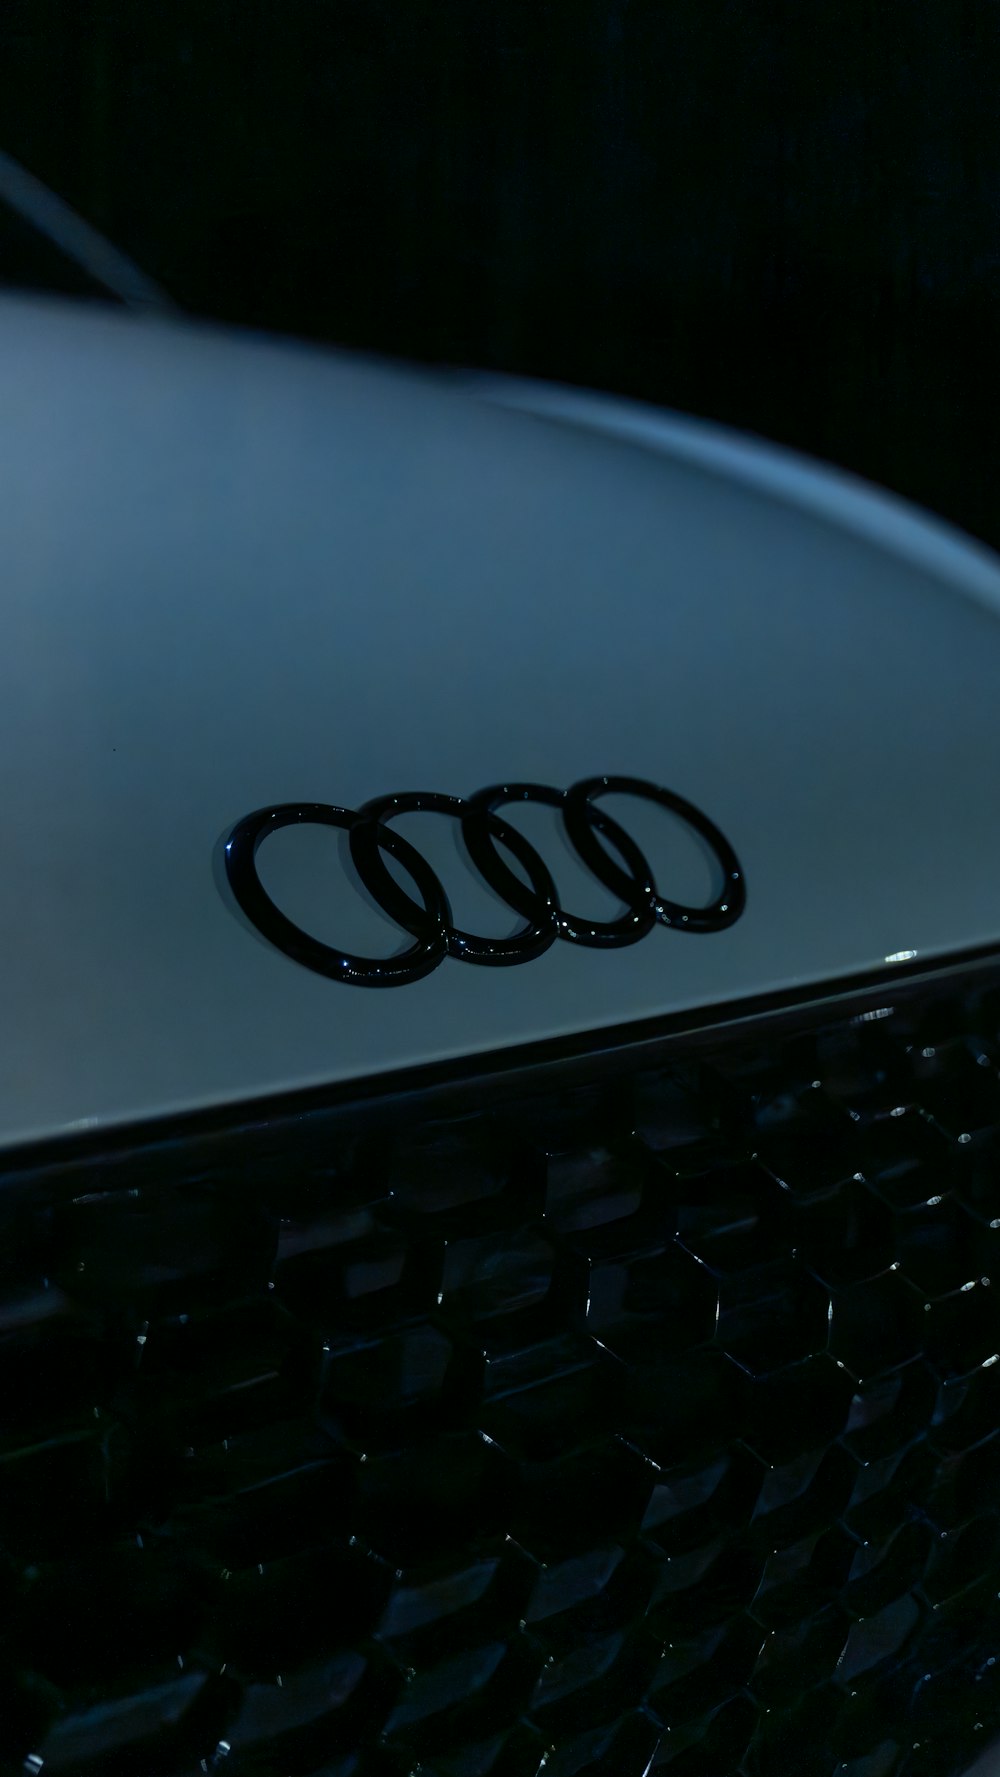 Um close up de um emblema Audi em um carro